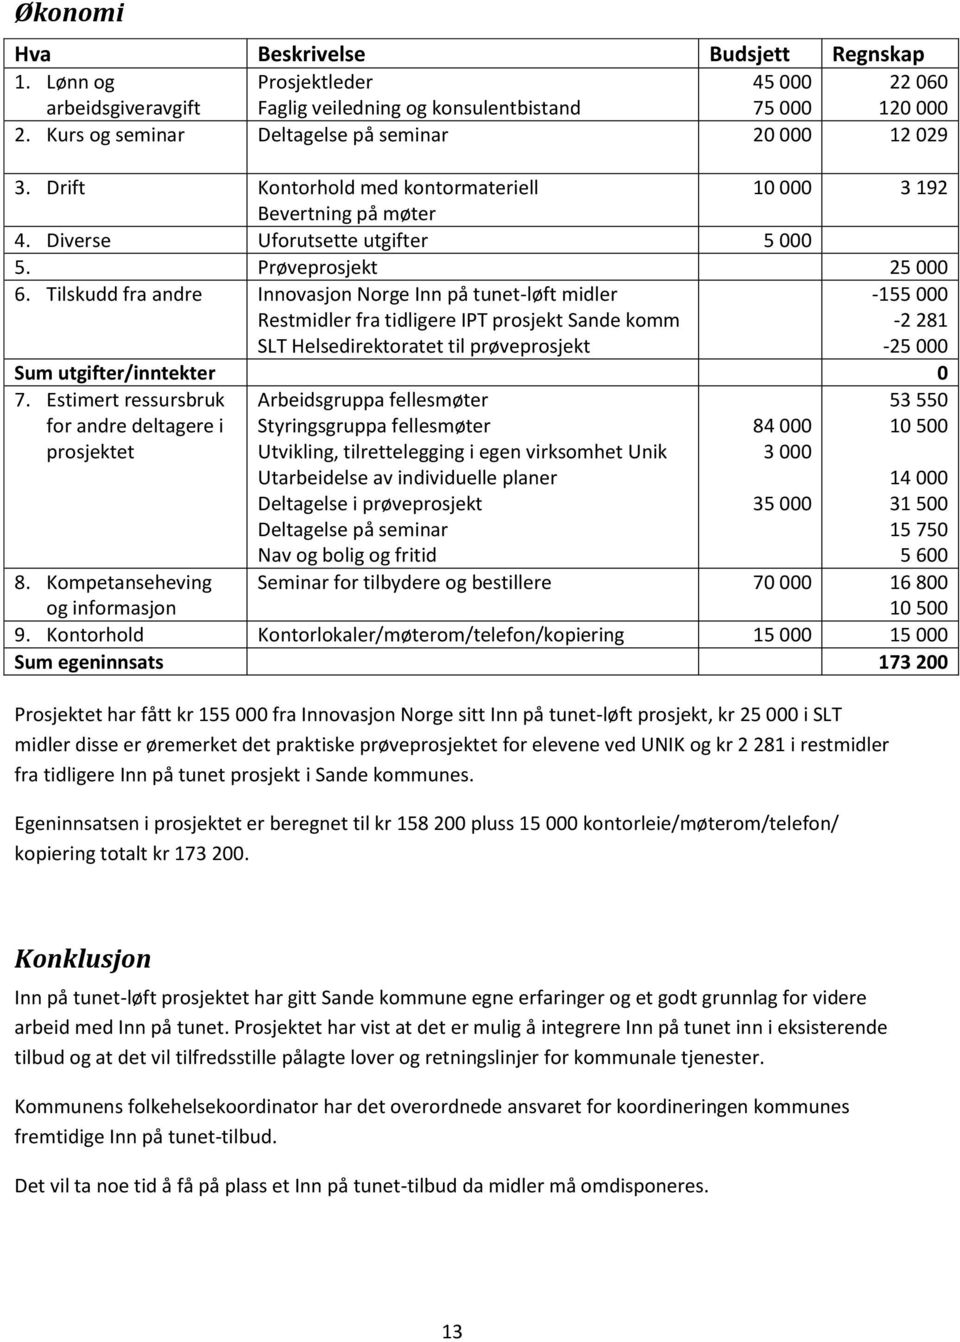 Tilskudd fra andre Innovasjon Norge Inn på tunet-løft midler Restmidler fra tidligere IPT prosjekt Sande komm SLT Helsedirektoratet til prøveprosjekt -155 000-2 281-25 000 Sum utgifter/inntekter 0 7.